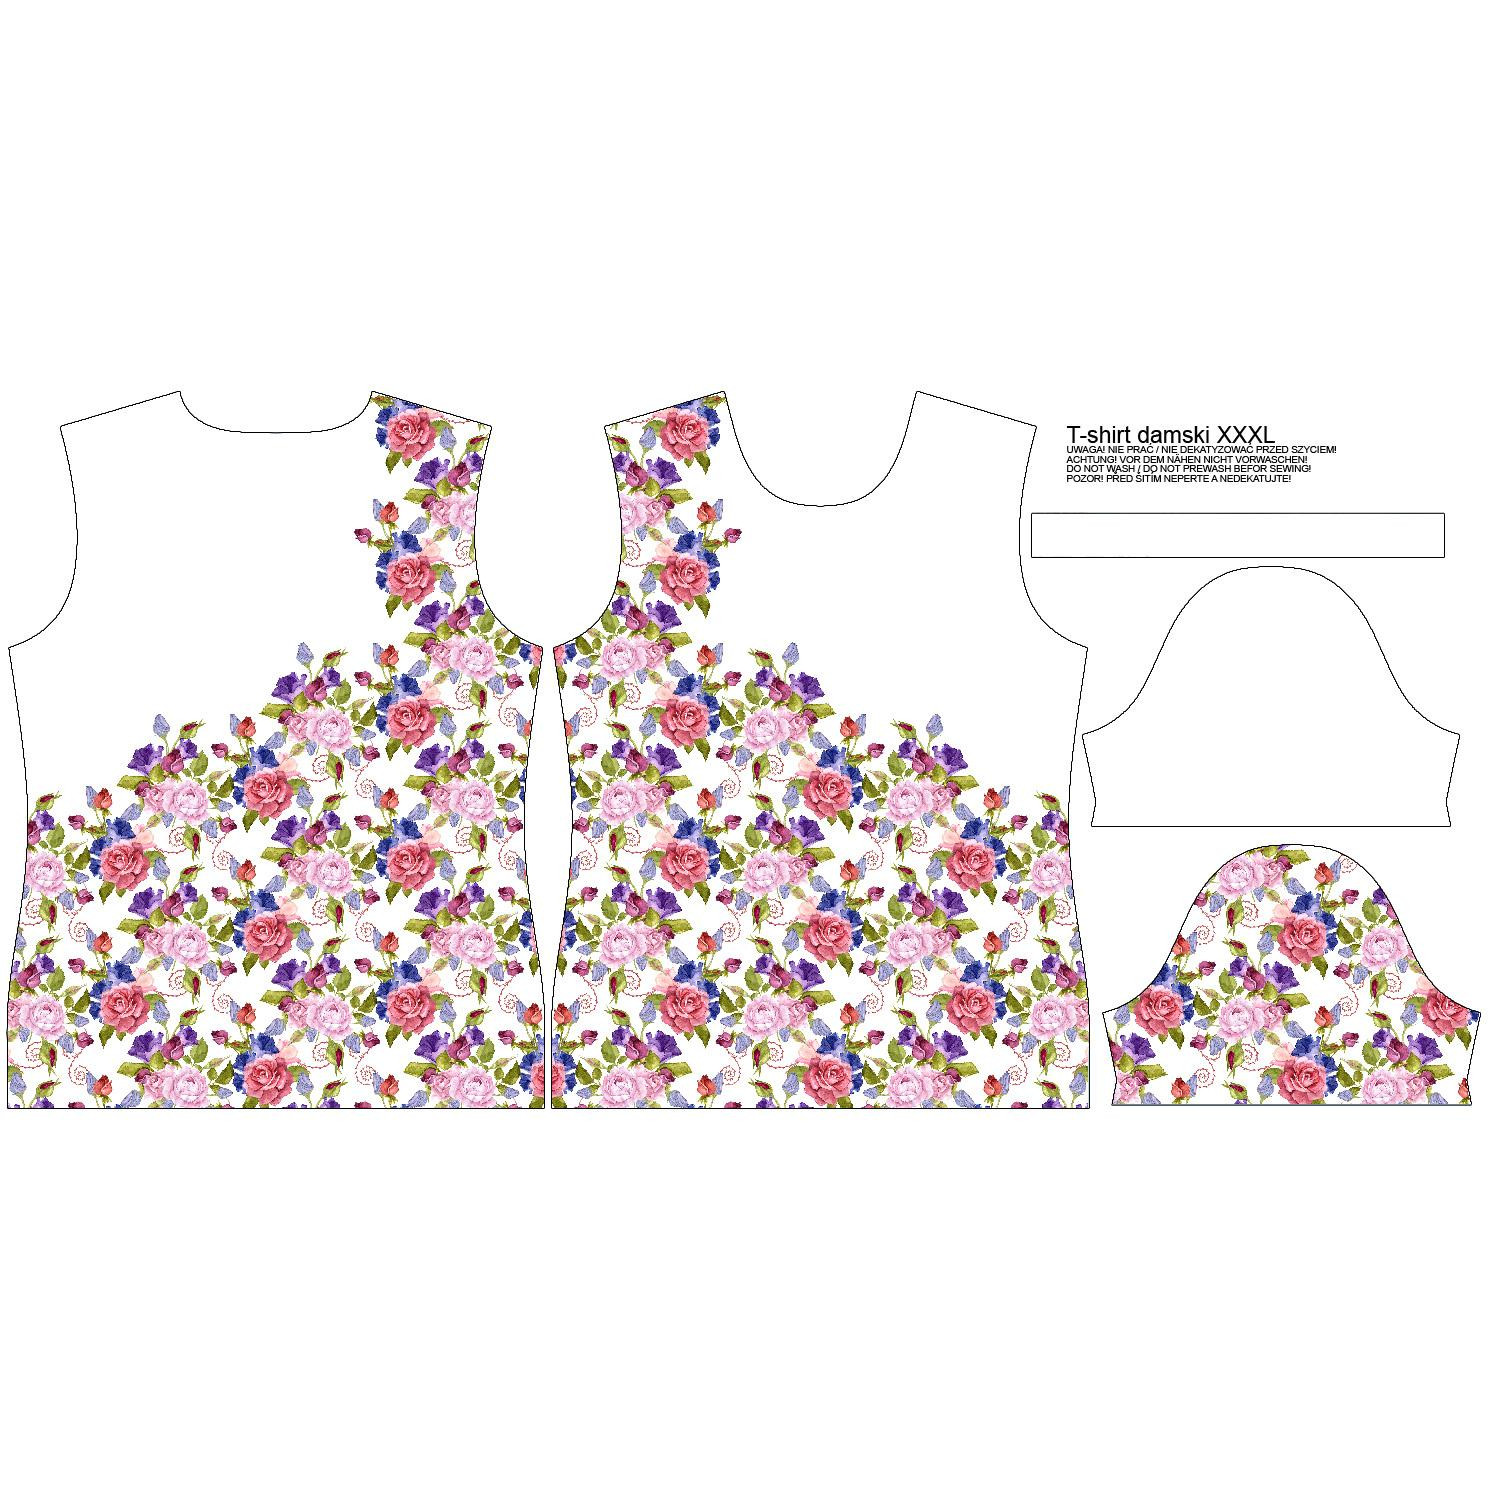 WOMEN’S T-SHIRT - ROSE FLOWERS PAT. 2 (BLOOMING MEADOW) - single jersey